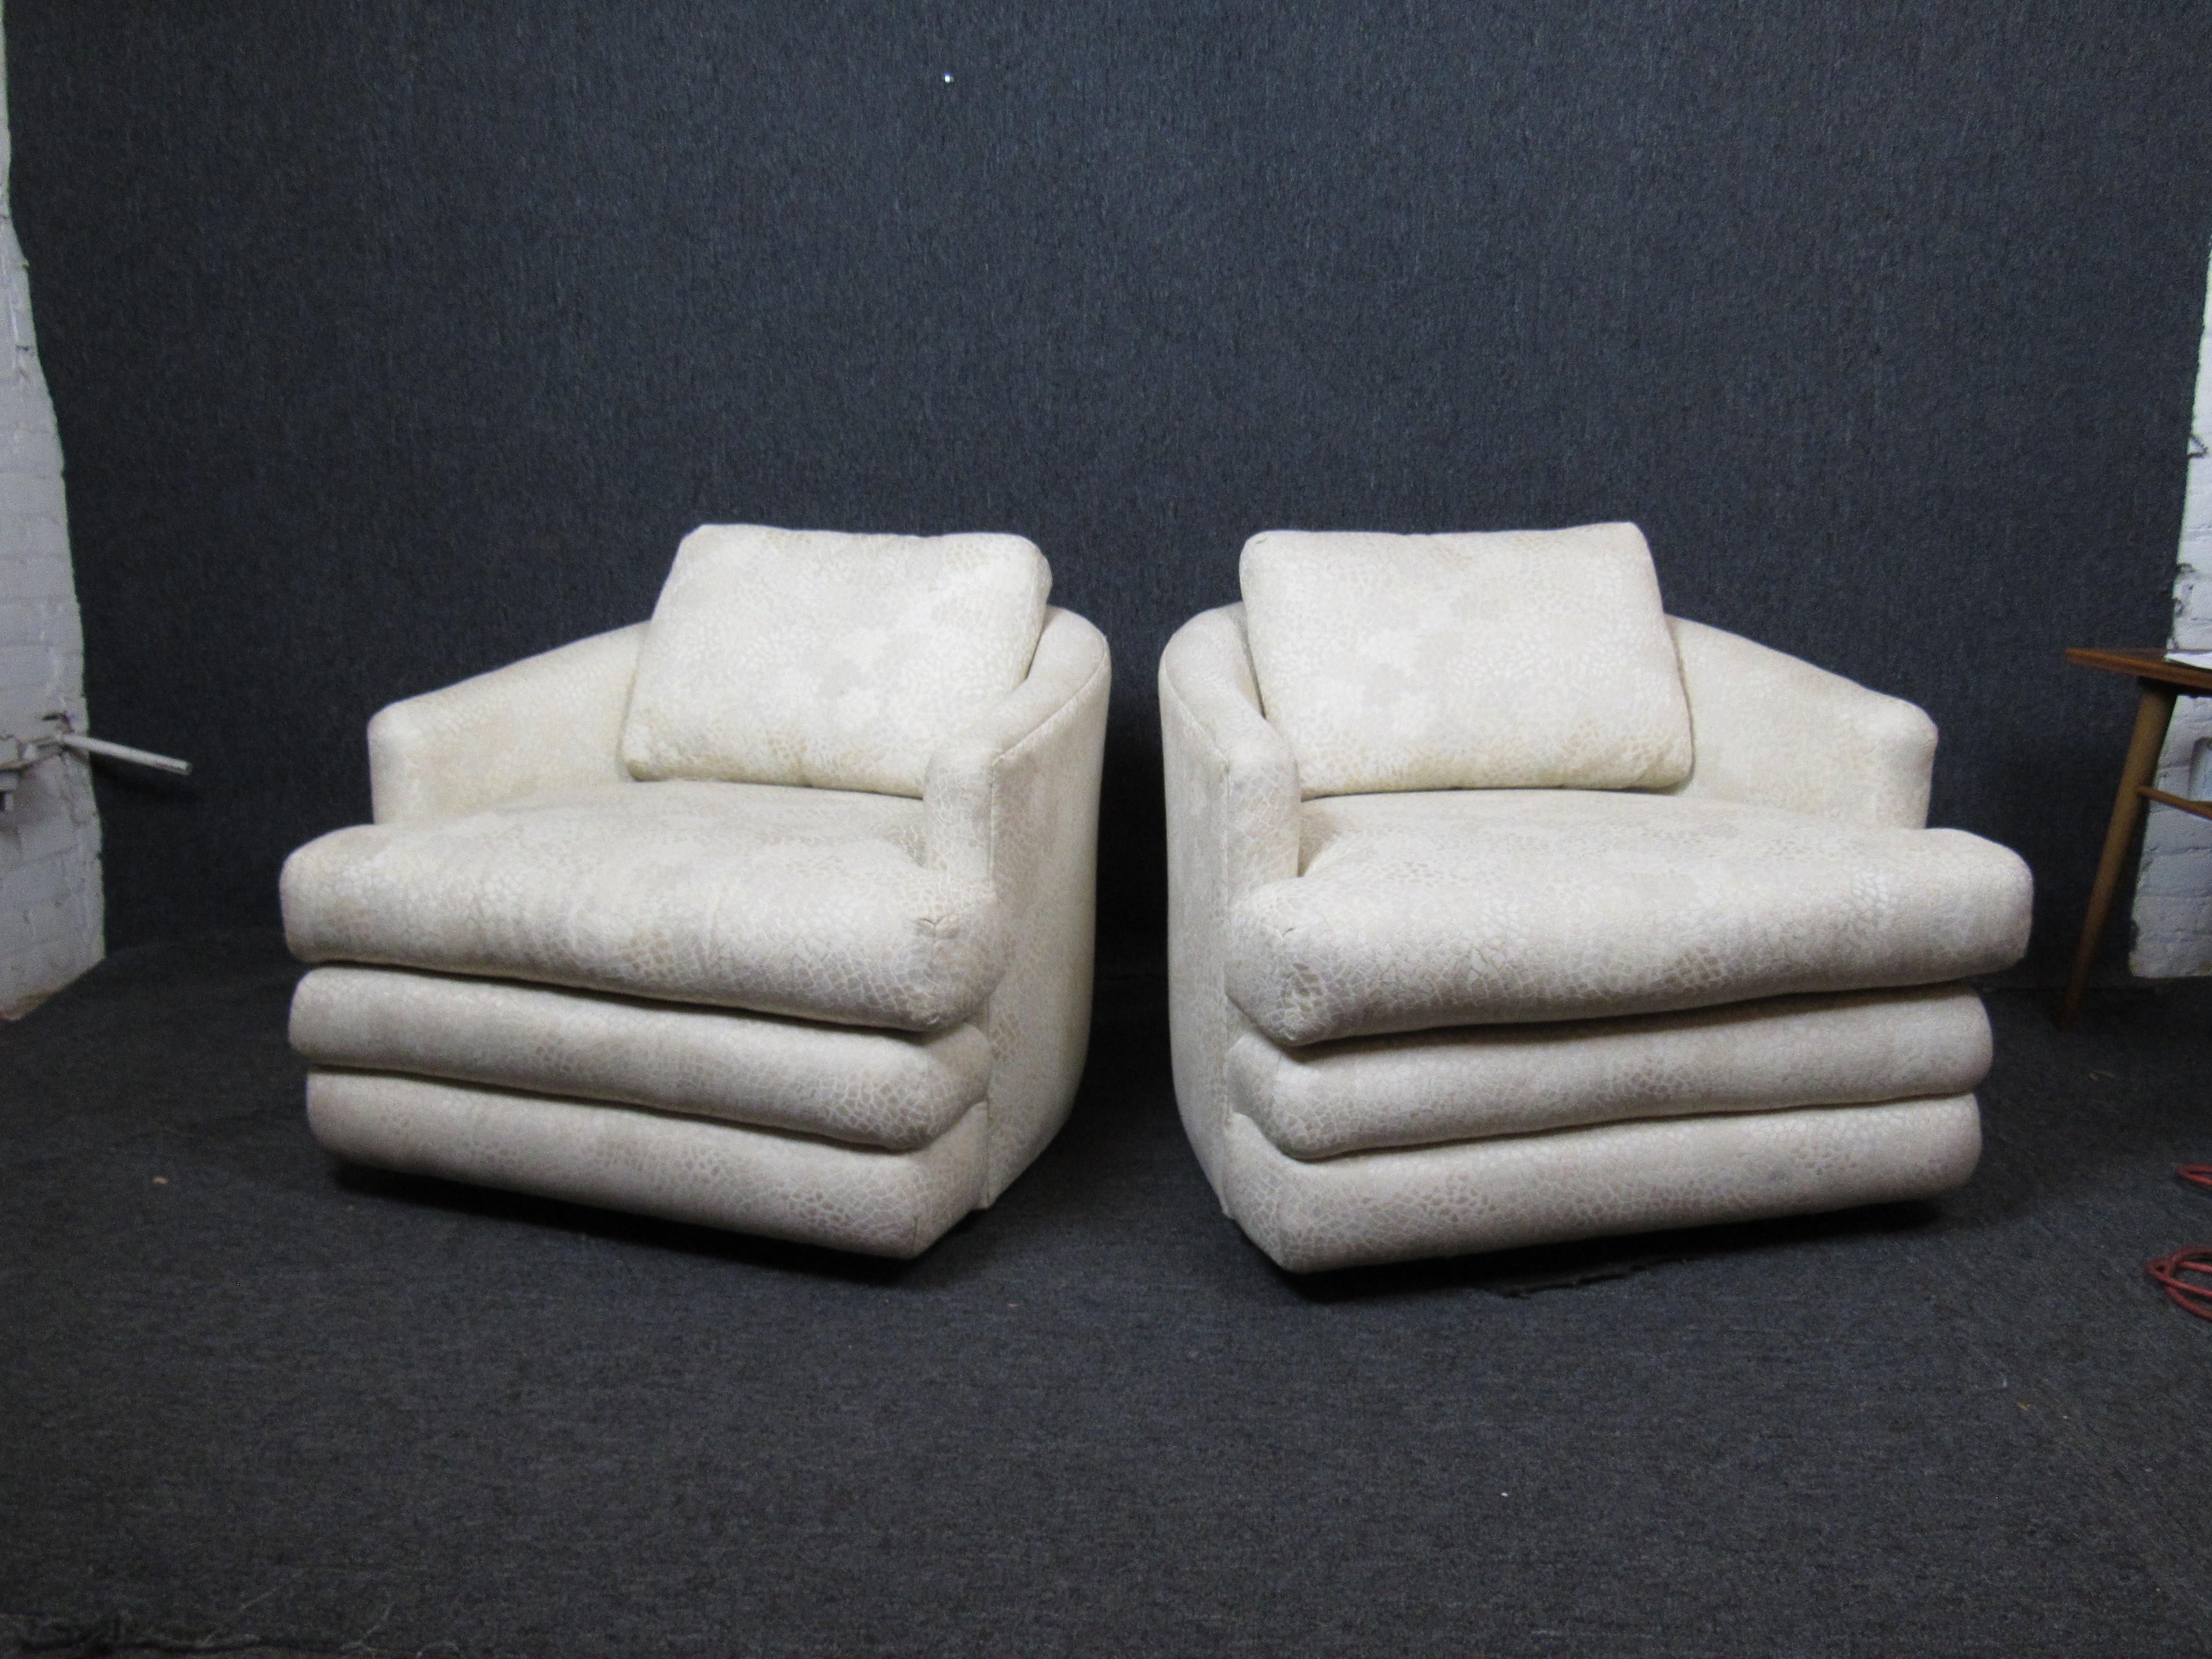 Superbe paire de chaises longues en peluche avec un tissu funky, semblable à du serpent. Des sièges surdimensionnés et moelleux qui vous procureront des heures de confort, à vous ou à vos invités. Parfait pour la maison, le bureau ou tout autre